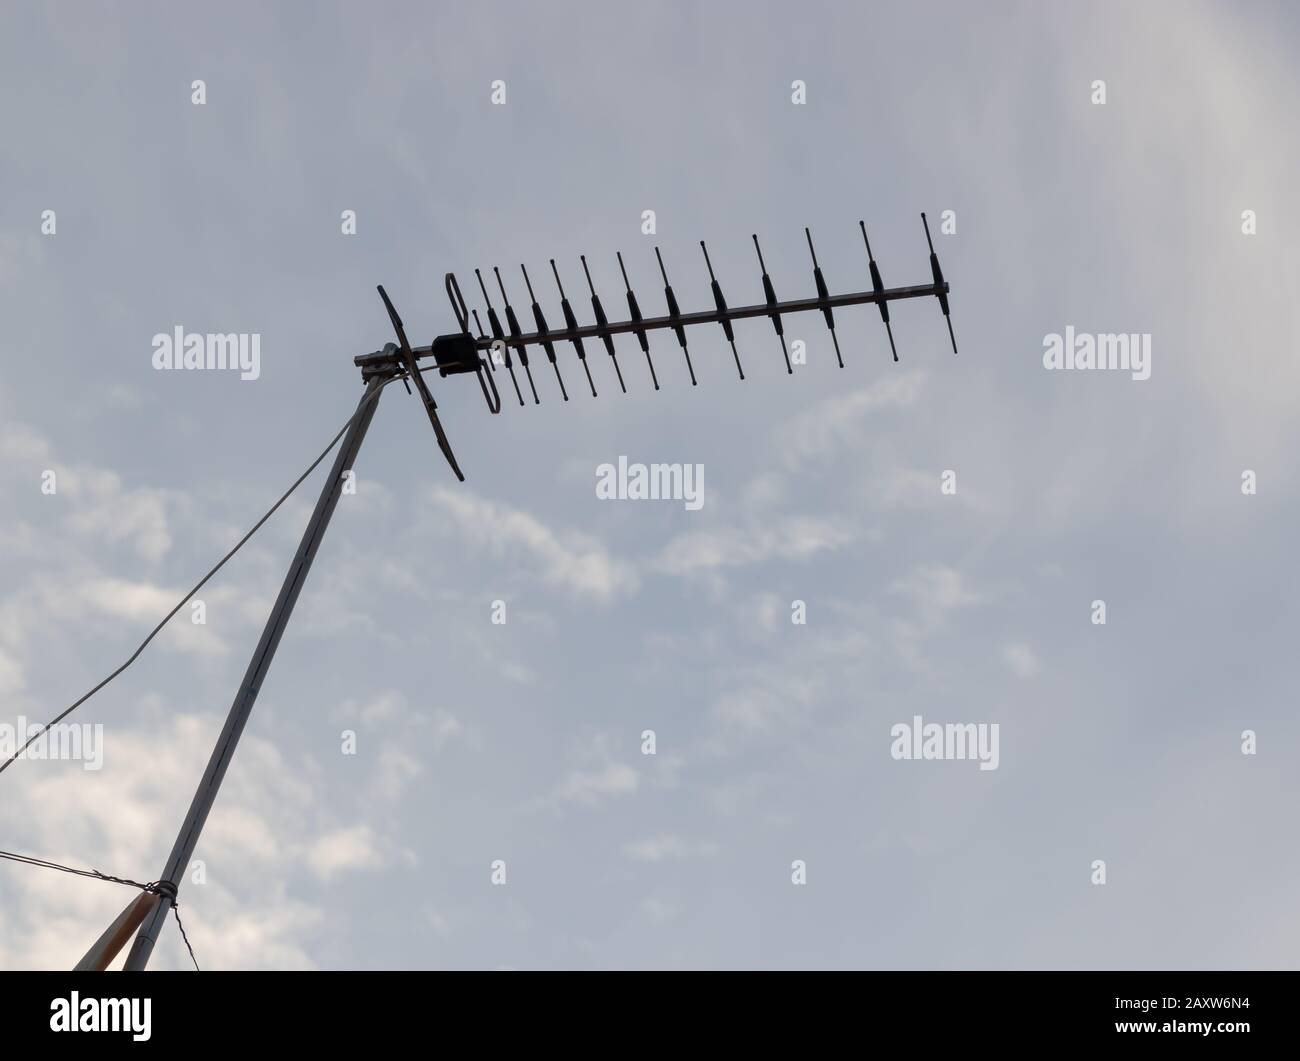 UFH-TV-Antenne vom Typ Yagi mit 12 Elementen Silhouette gegen blauen Himmel. Auch bekannt als yagi-uda Stockfoto